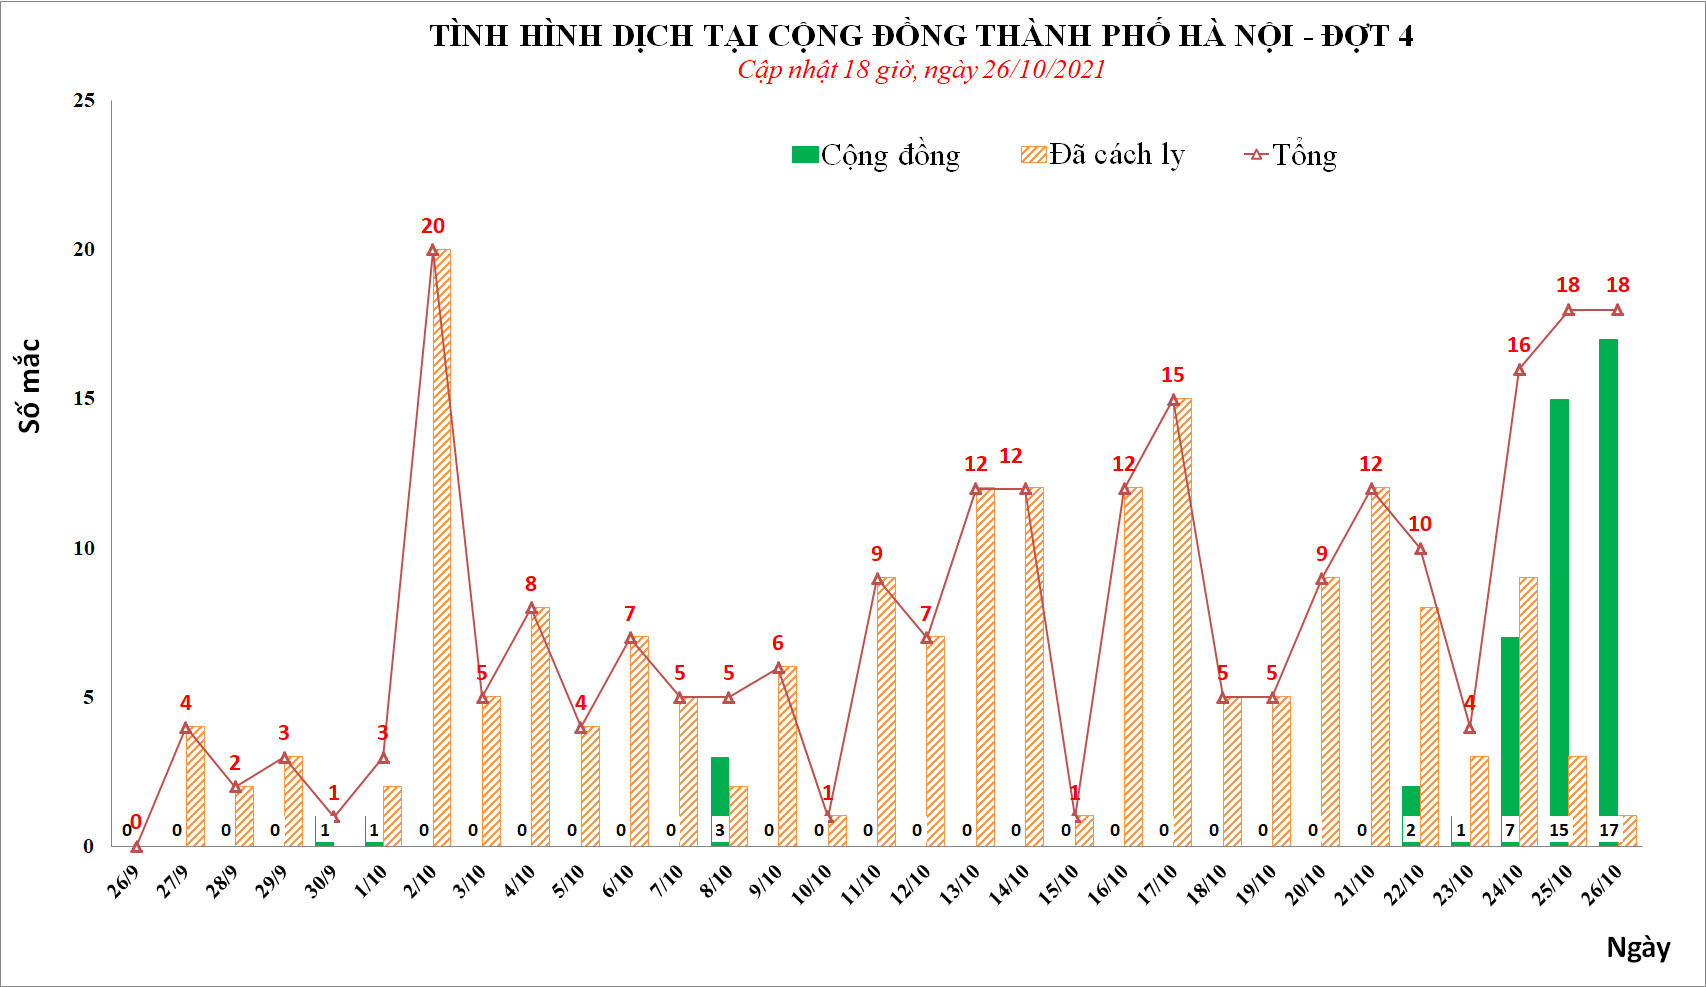 Ngày 26/10, Hà Nội phát hiện thêm 18 ca mắc Covid-19, trong đó, 17 ca cộng đồng - Ảnh 1.